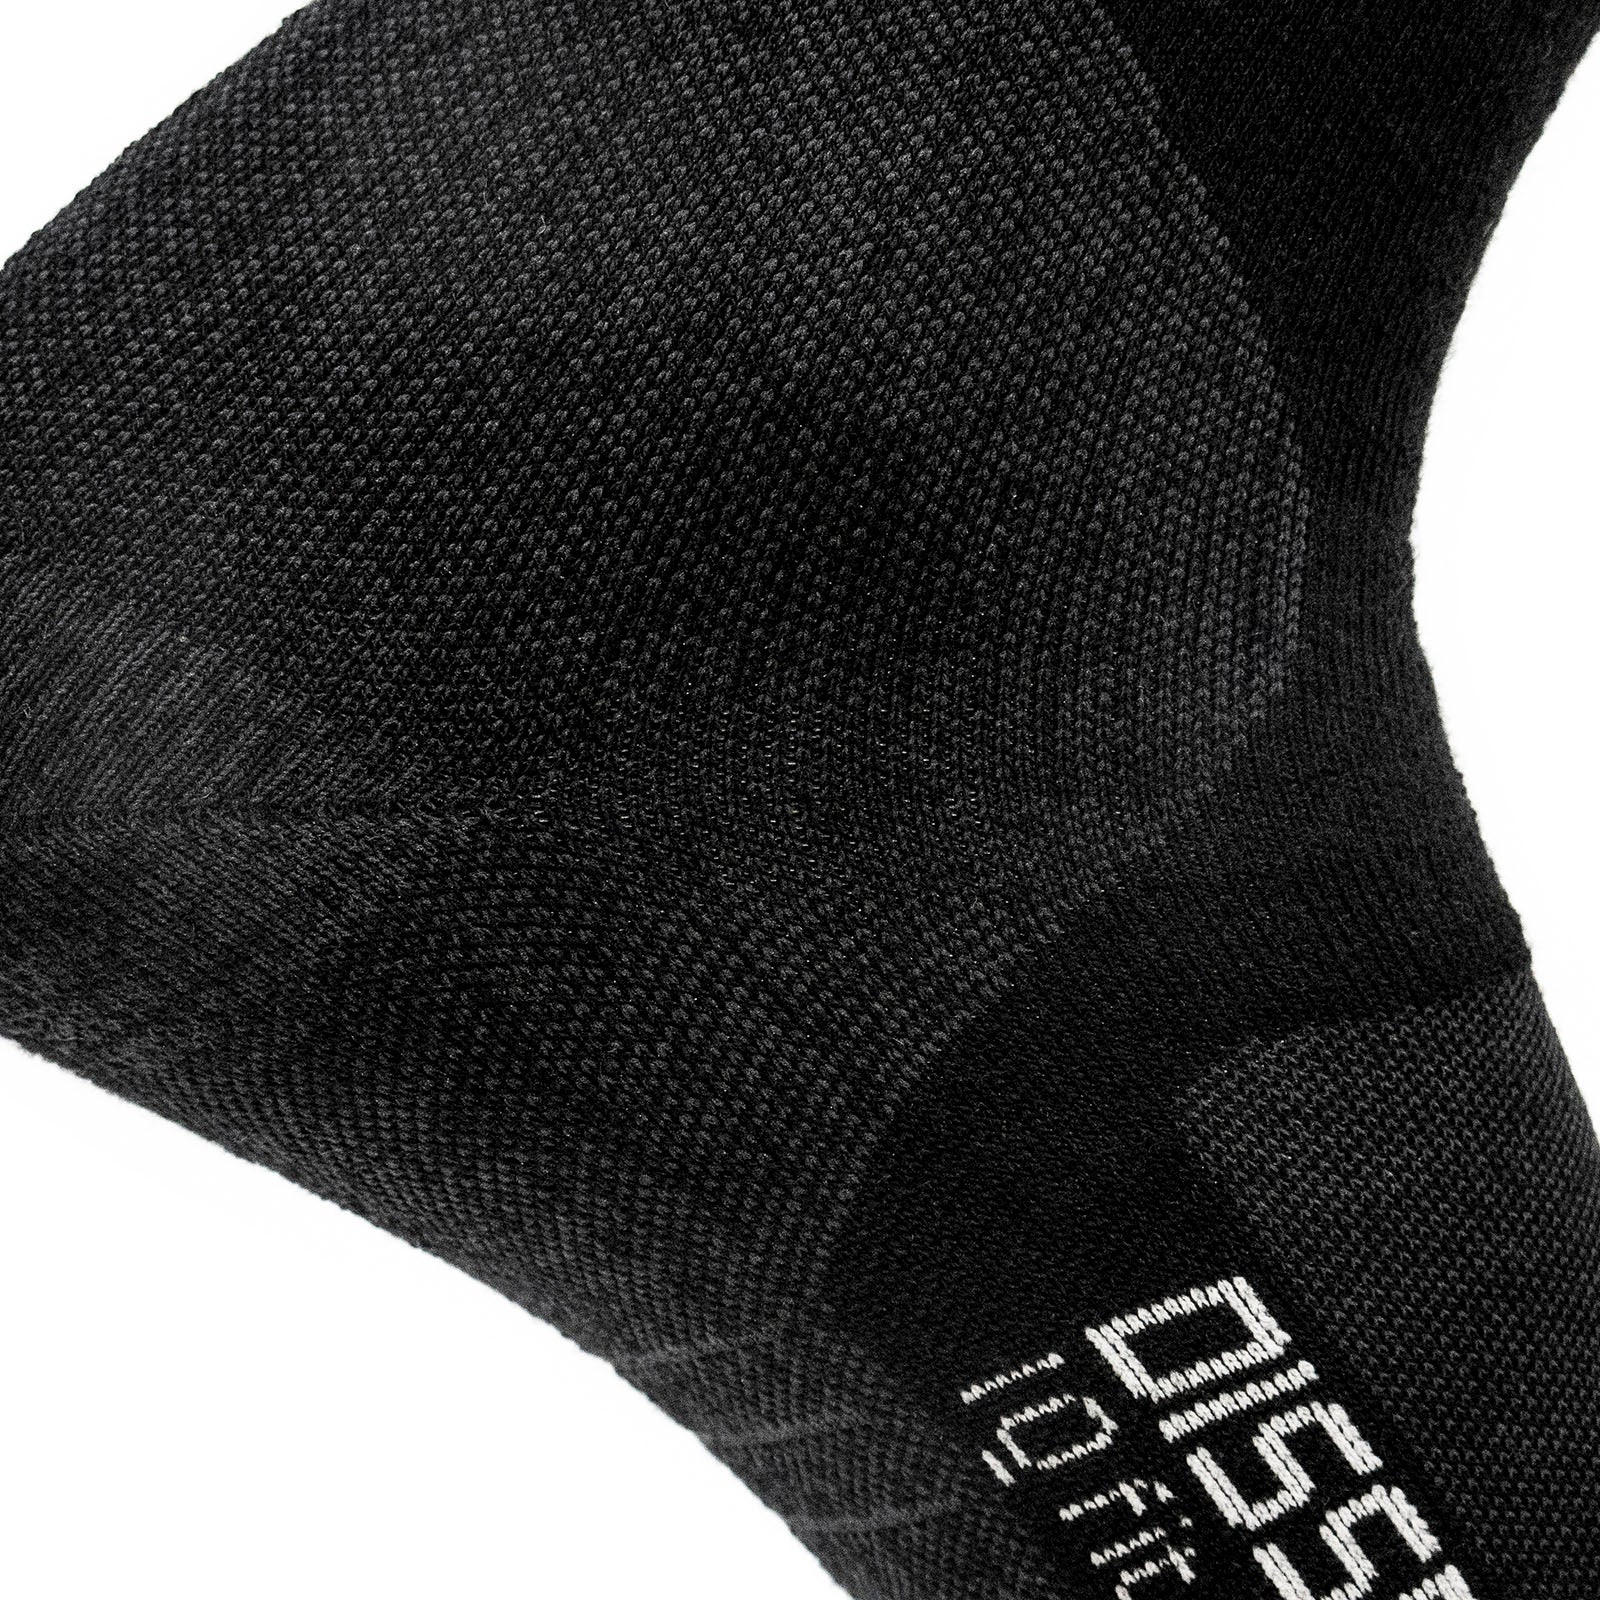 Dissent IQ Fit LoPro Ski Sock - Maximum Warmth + Merino Wool 